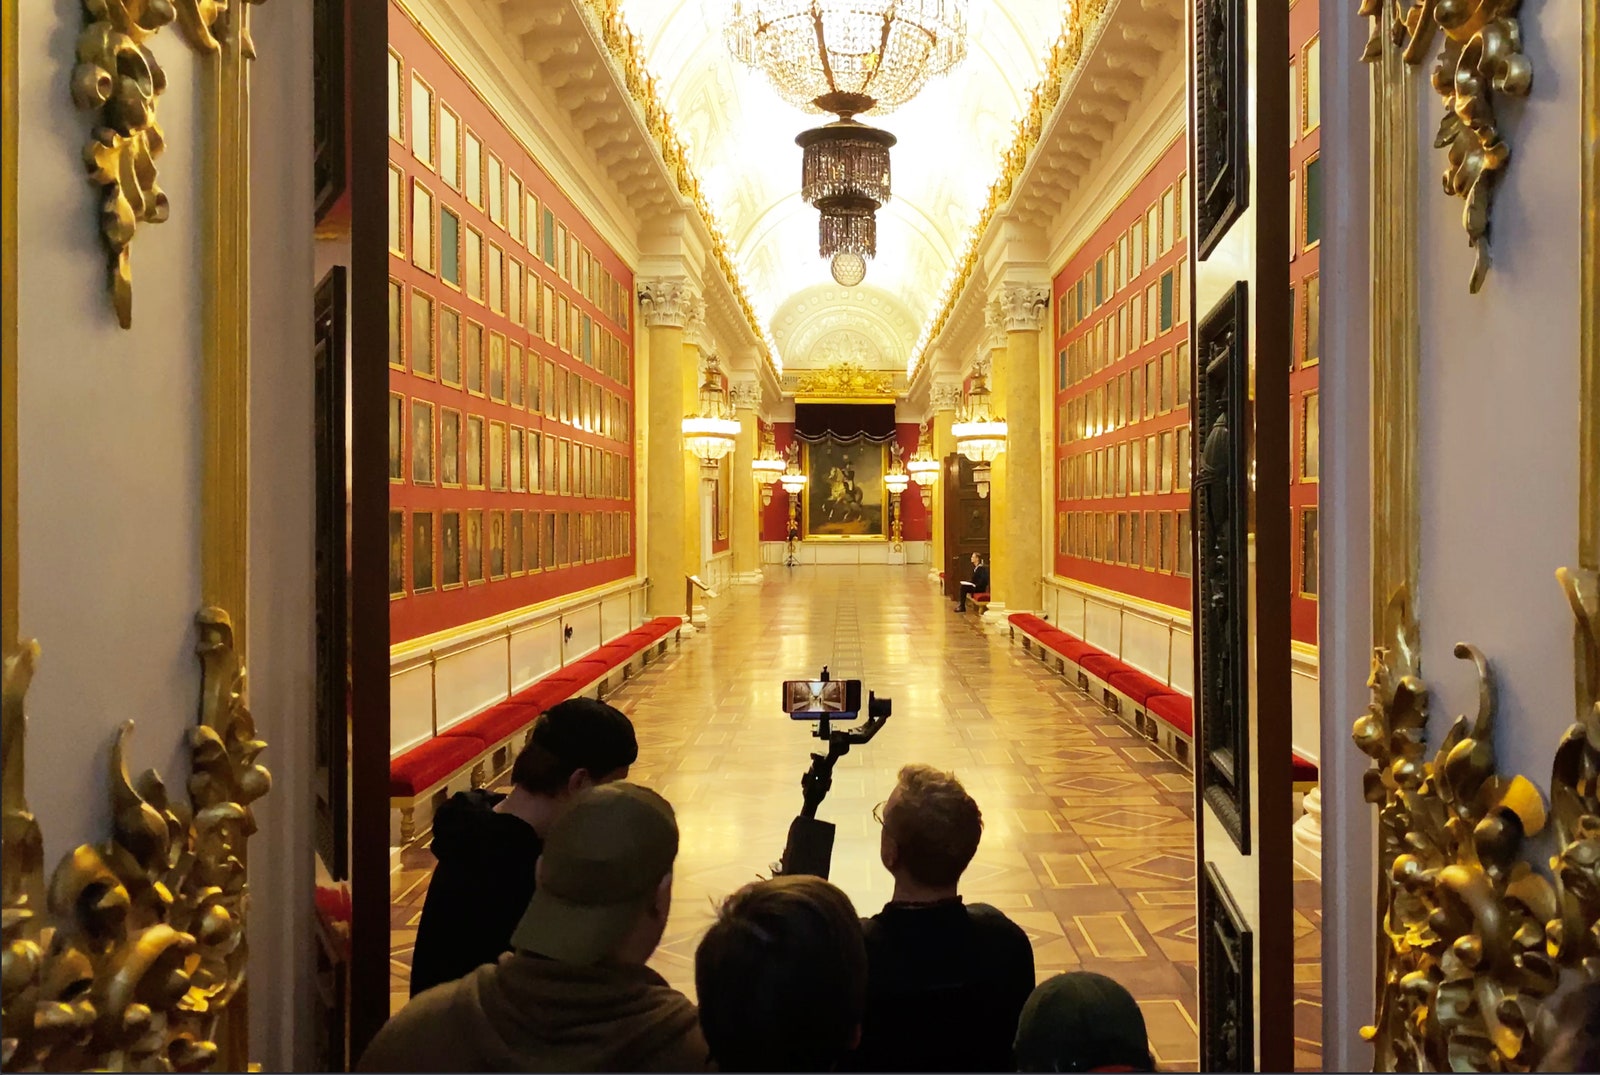 Планы на вечер пятичасовой фильм об Эрмитаже снятый на iPhone